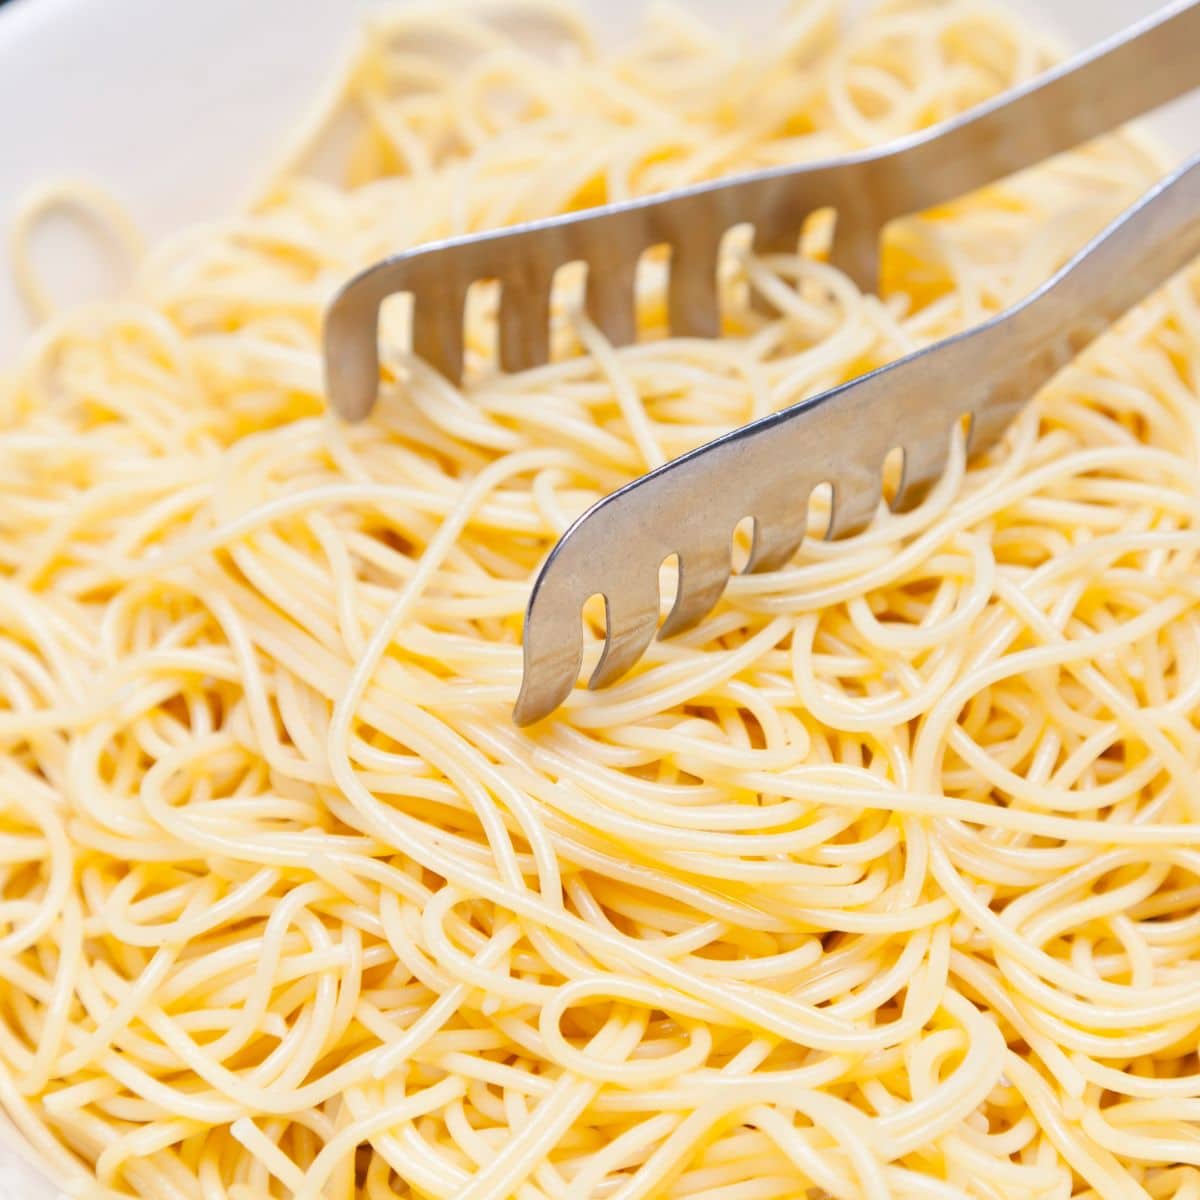 Kvadratna slika rezanaca za špagete.